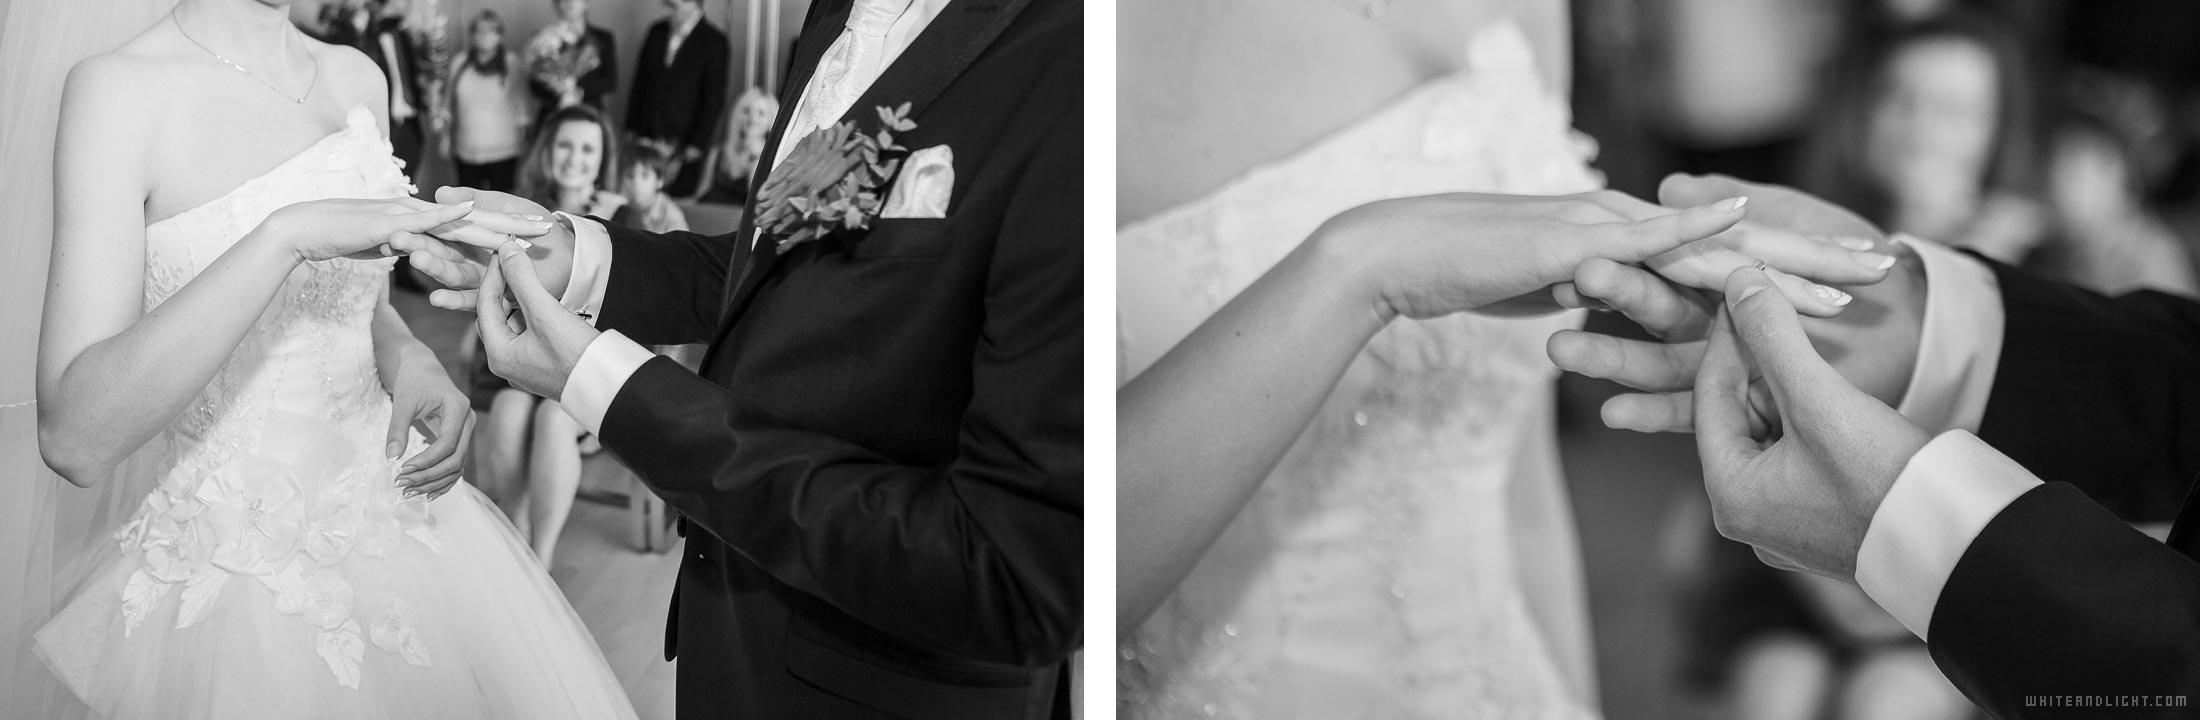 Свадебный фотограф Standesamt – профессиональная фотосъемка свадьбы